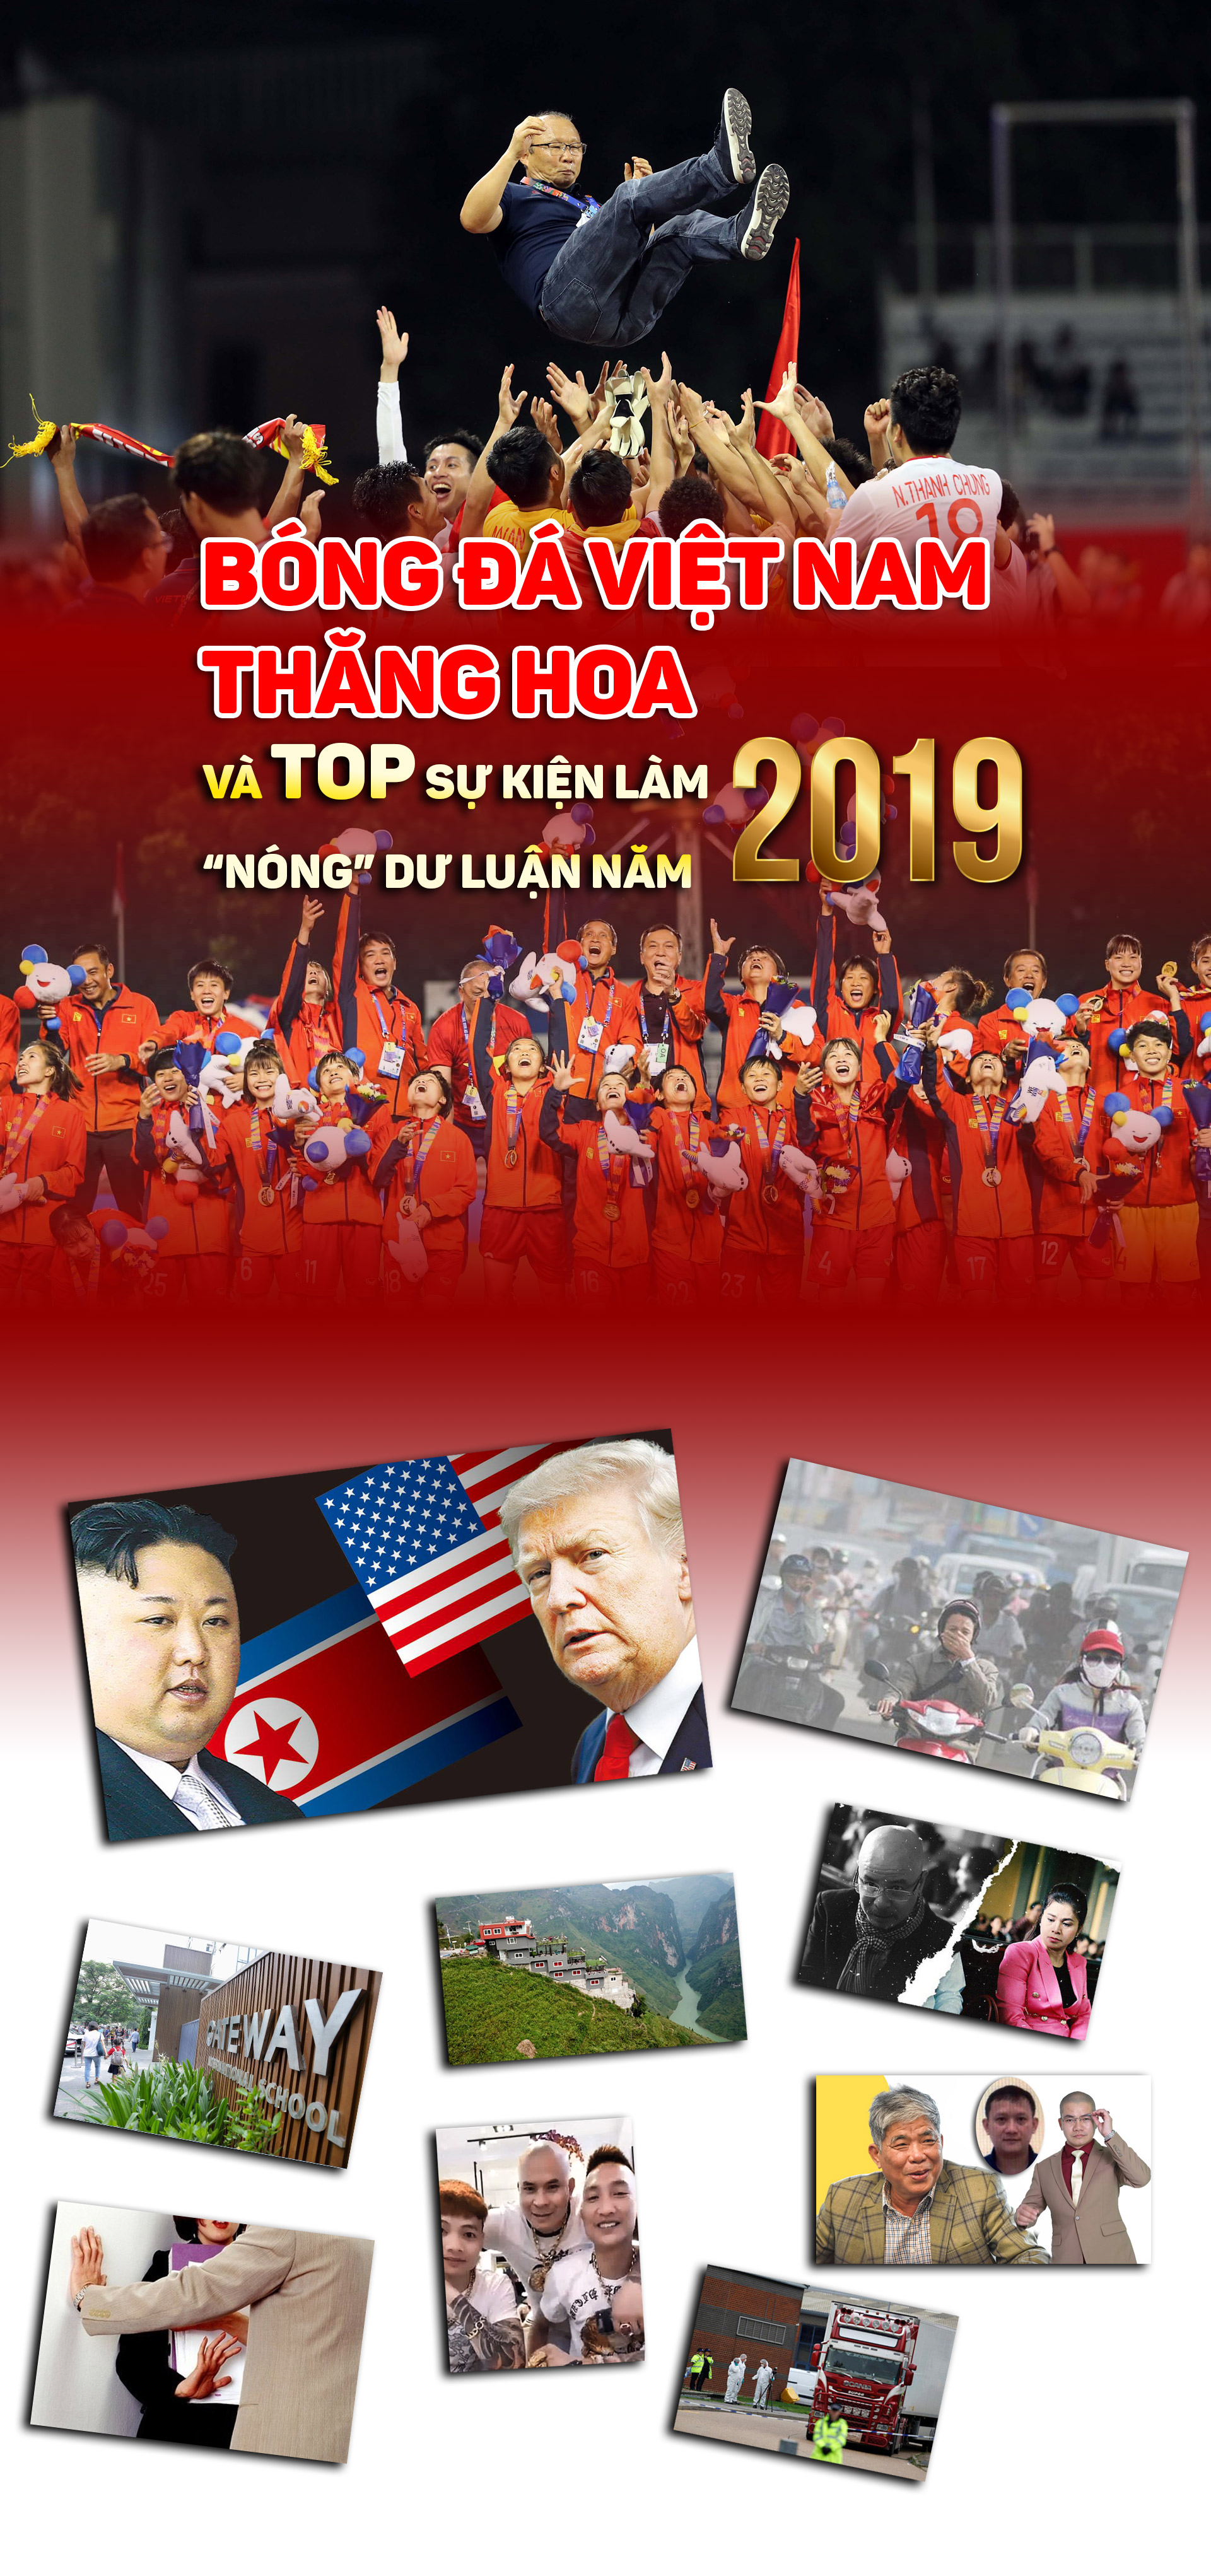 Bóng đá Việt thăng hoa và TOP sự kiện làm “nóng” dư luận năm 2019 - 1